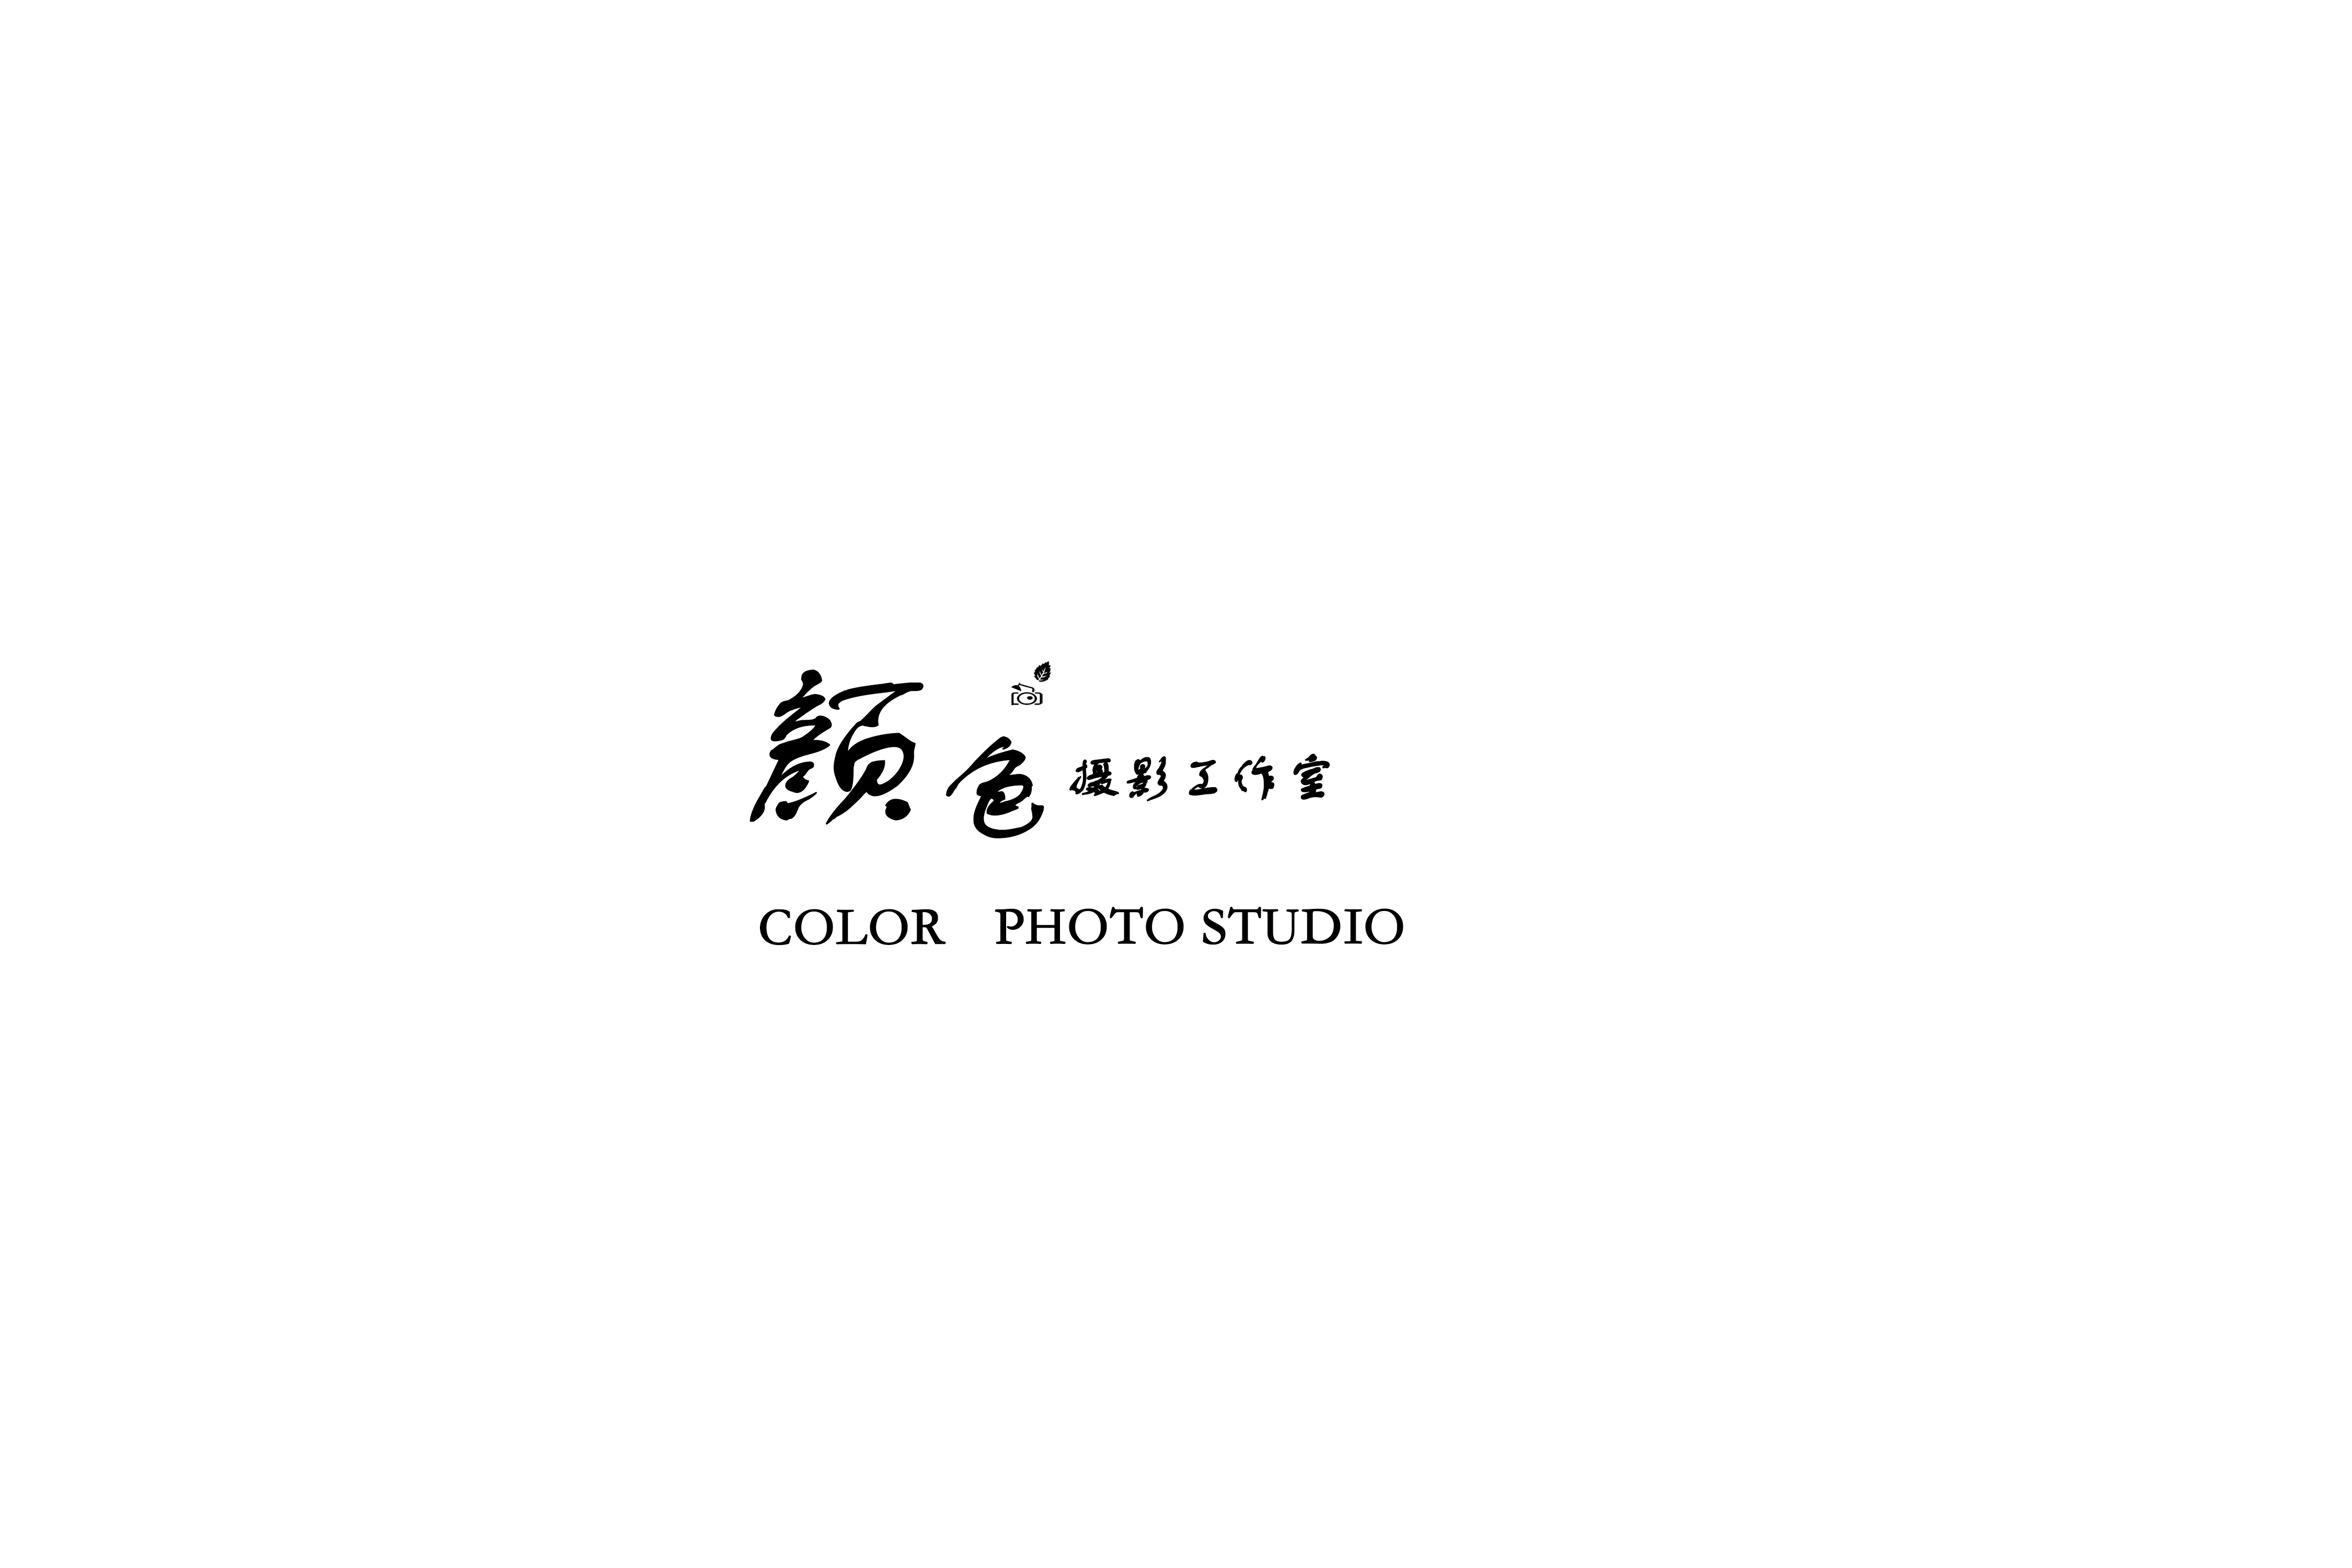 颜色摄影工作室